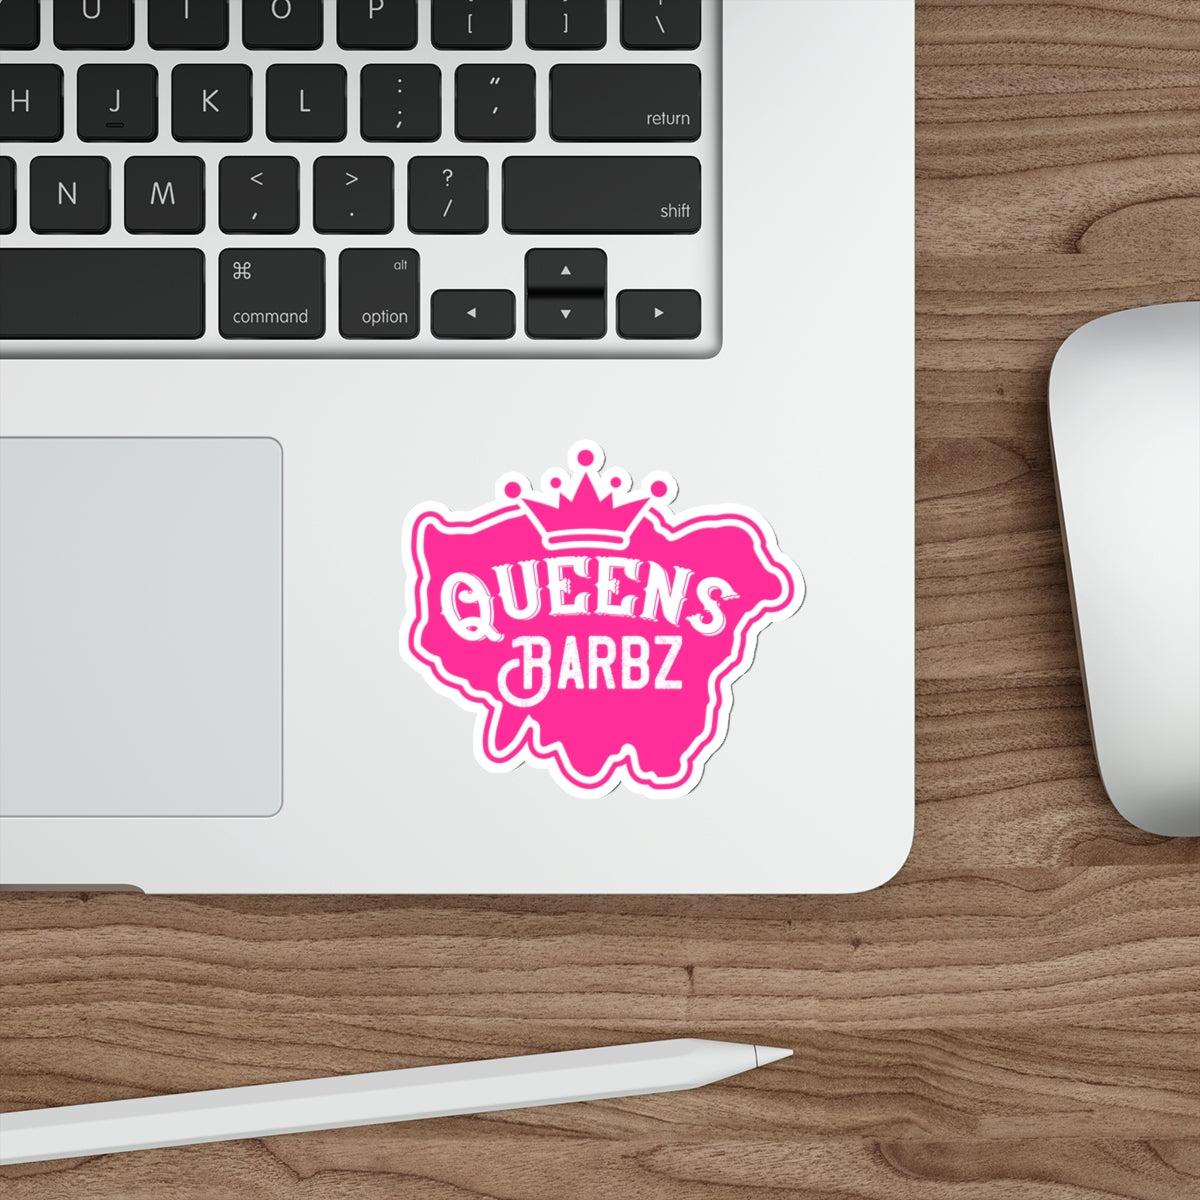 Queens Barbz Sticker